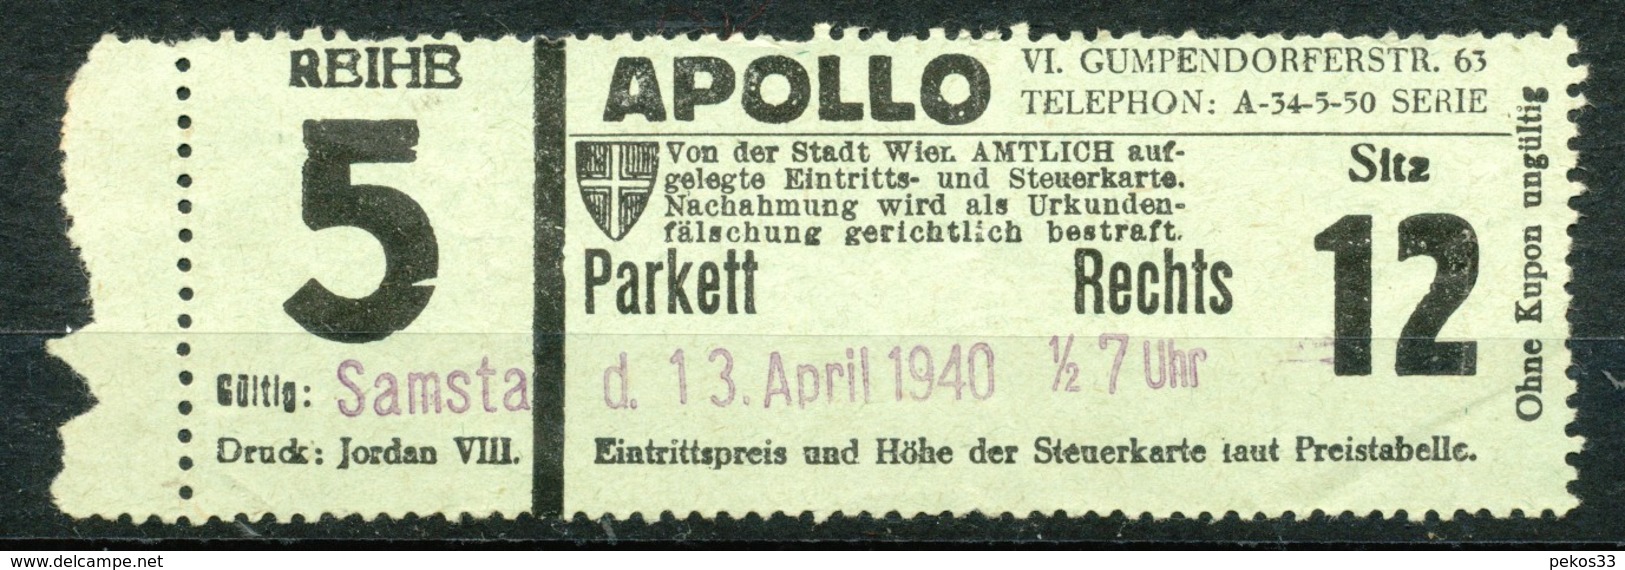 Österreich -  Eintrittskarten  Wien  Apollo  Kino - Eintrittskarten